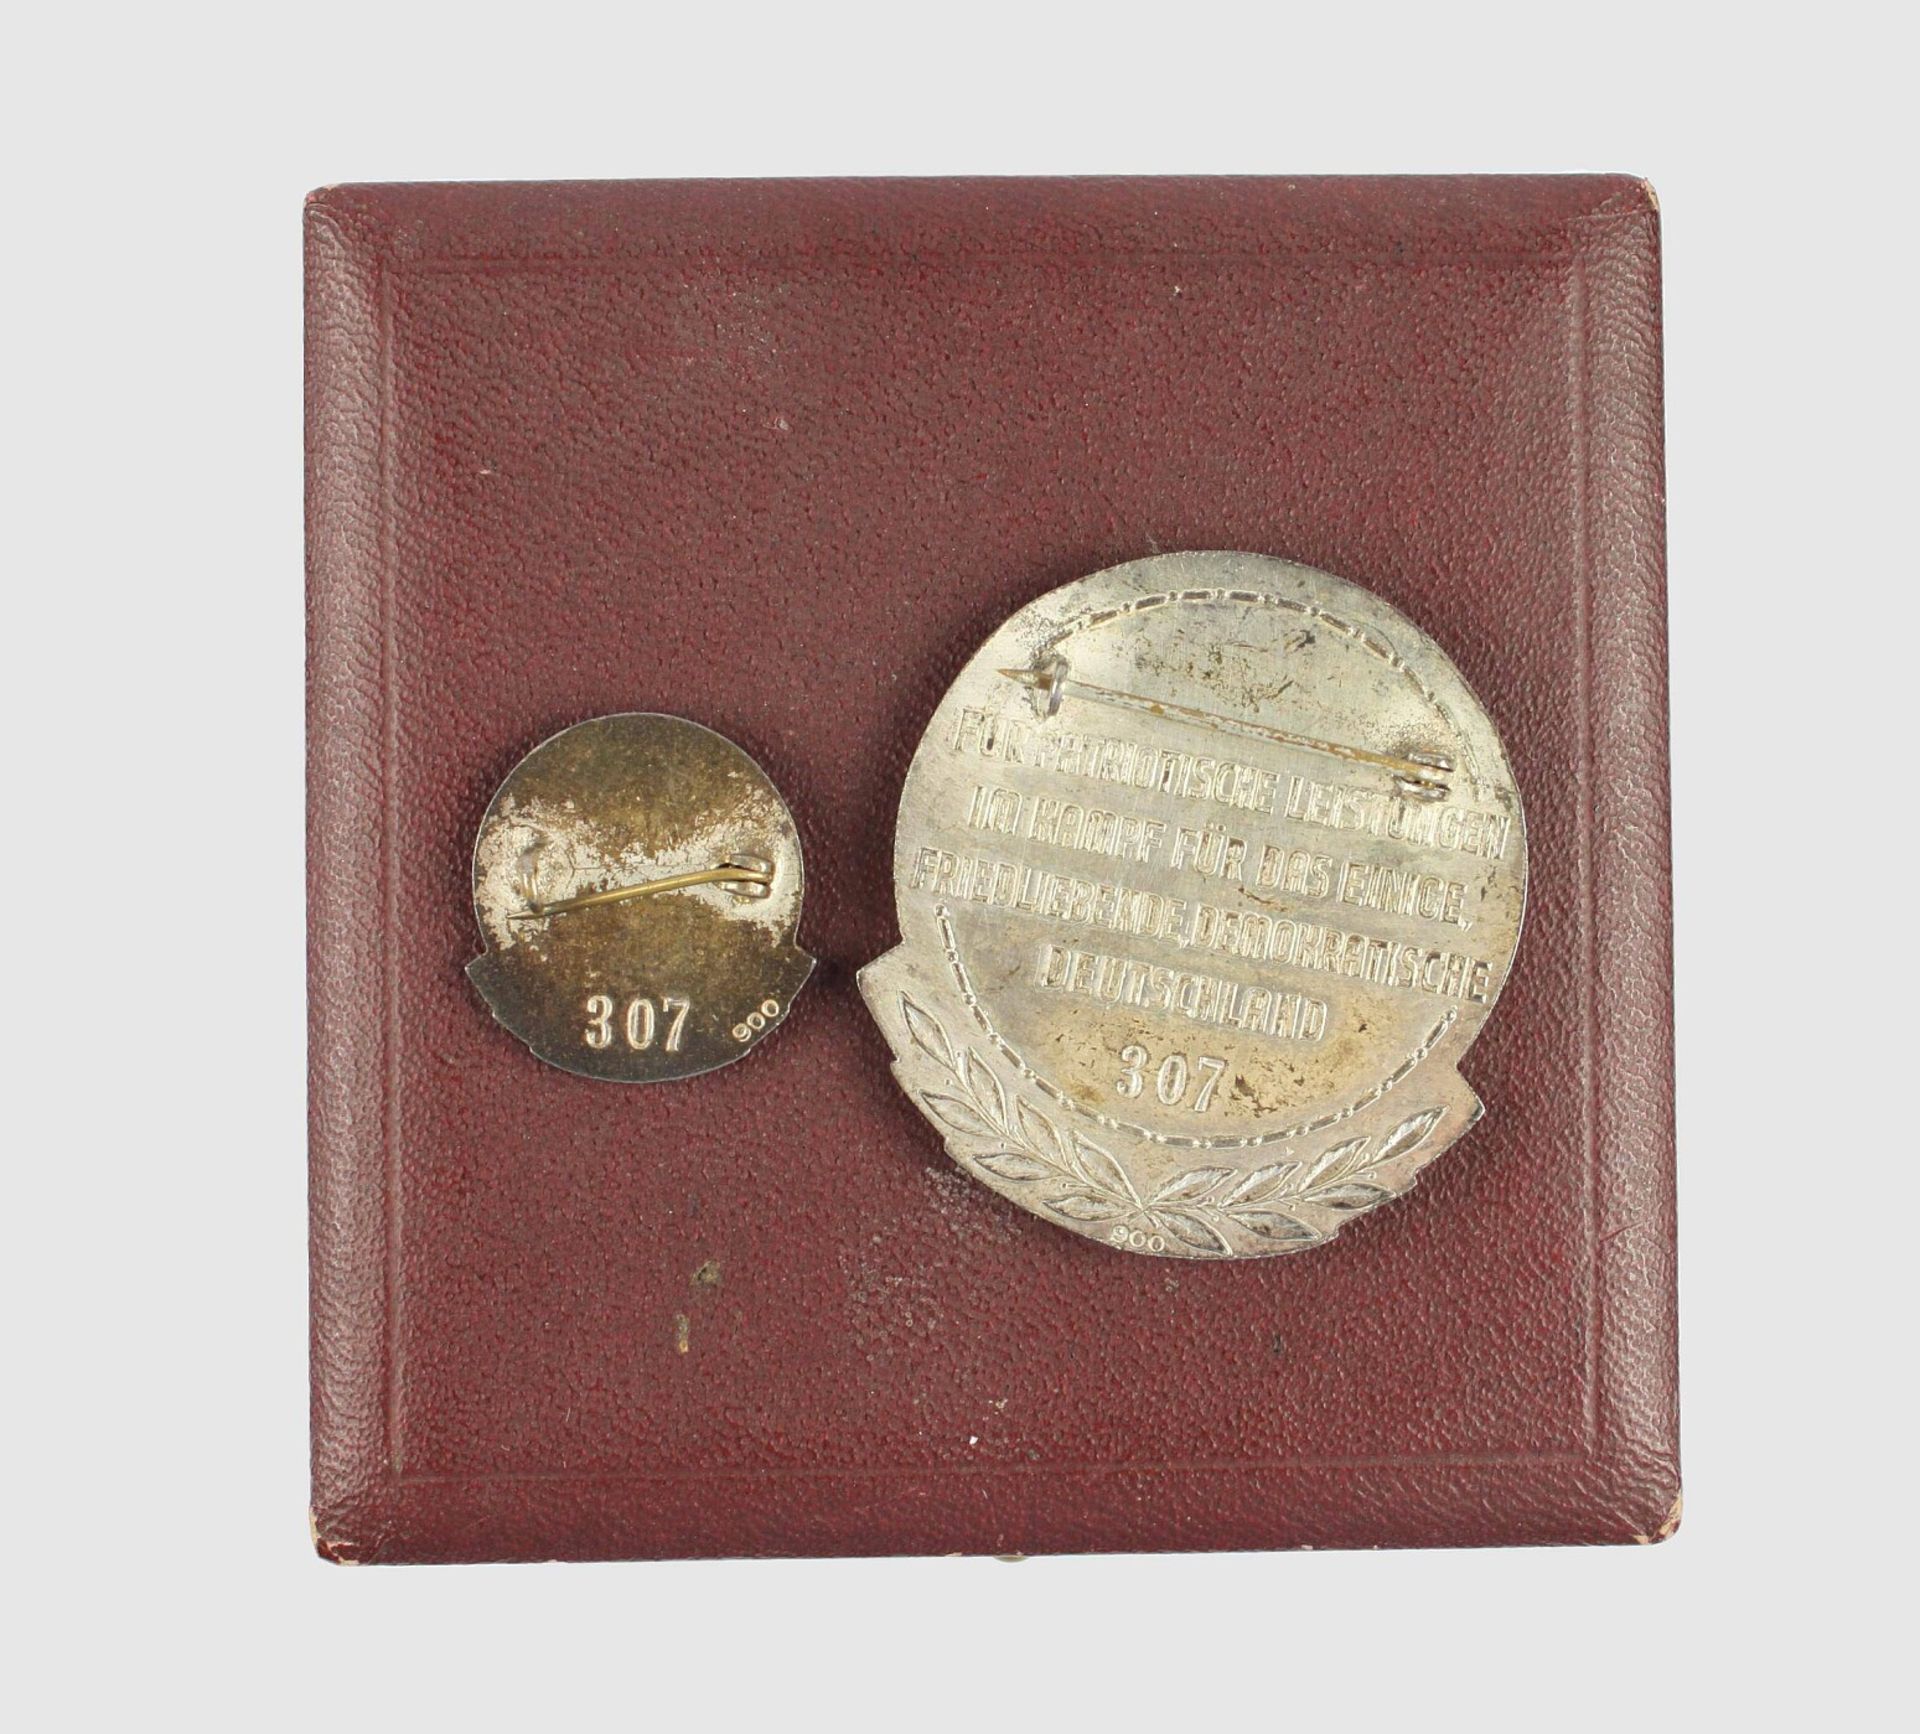 Ernst-Moritz-Arndt-Medaille - Image 2 of 2